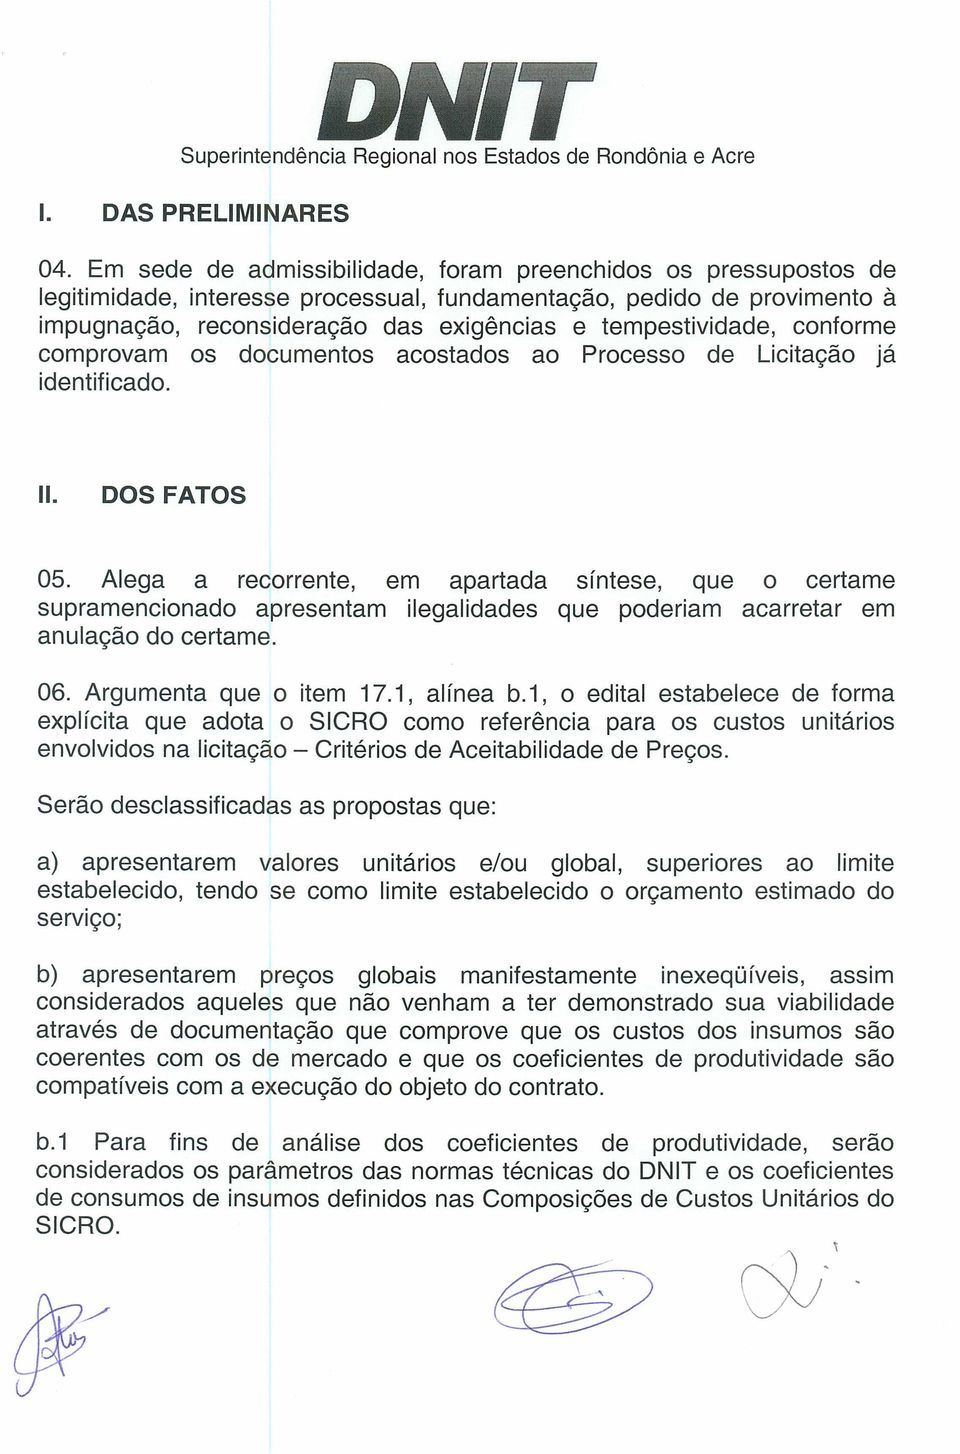 conforme comprovam os documentos acostados ao Processo de Licita9ao ja identificado. II. DOS FATOS 05.